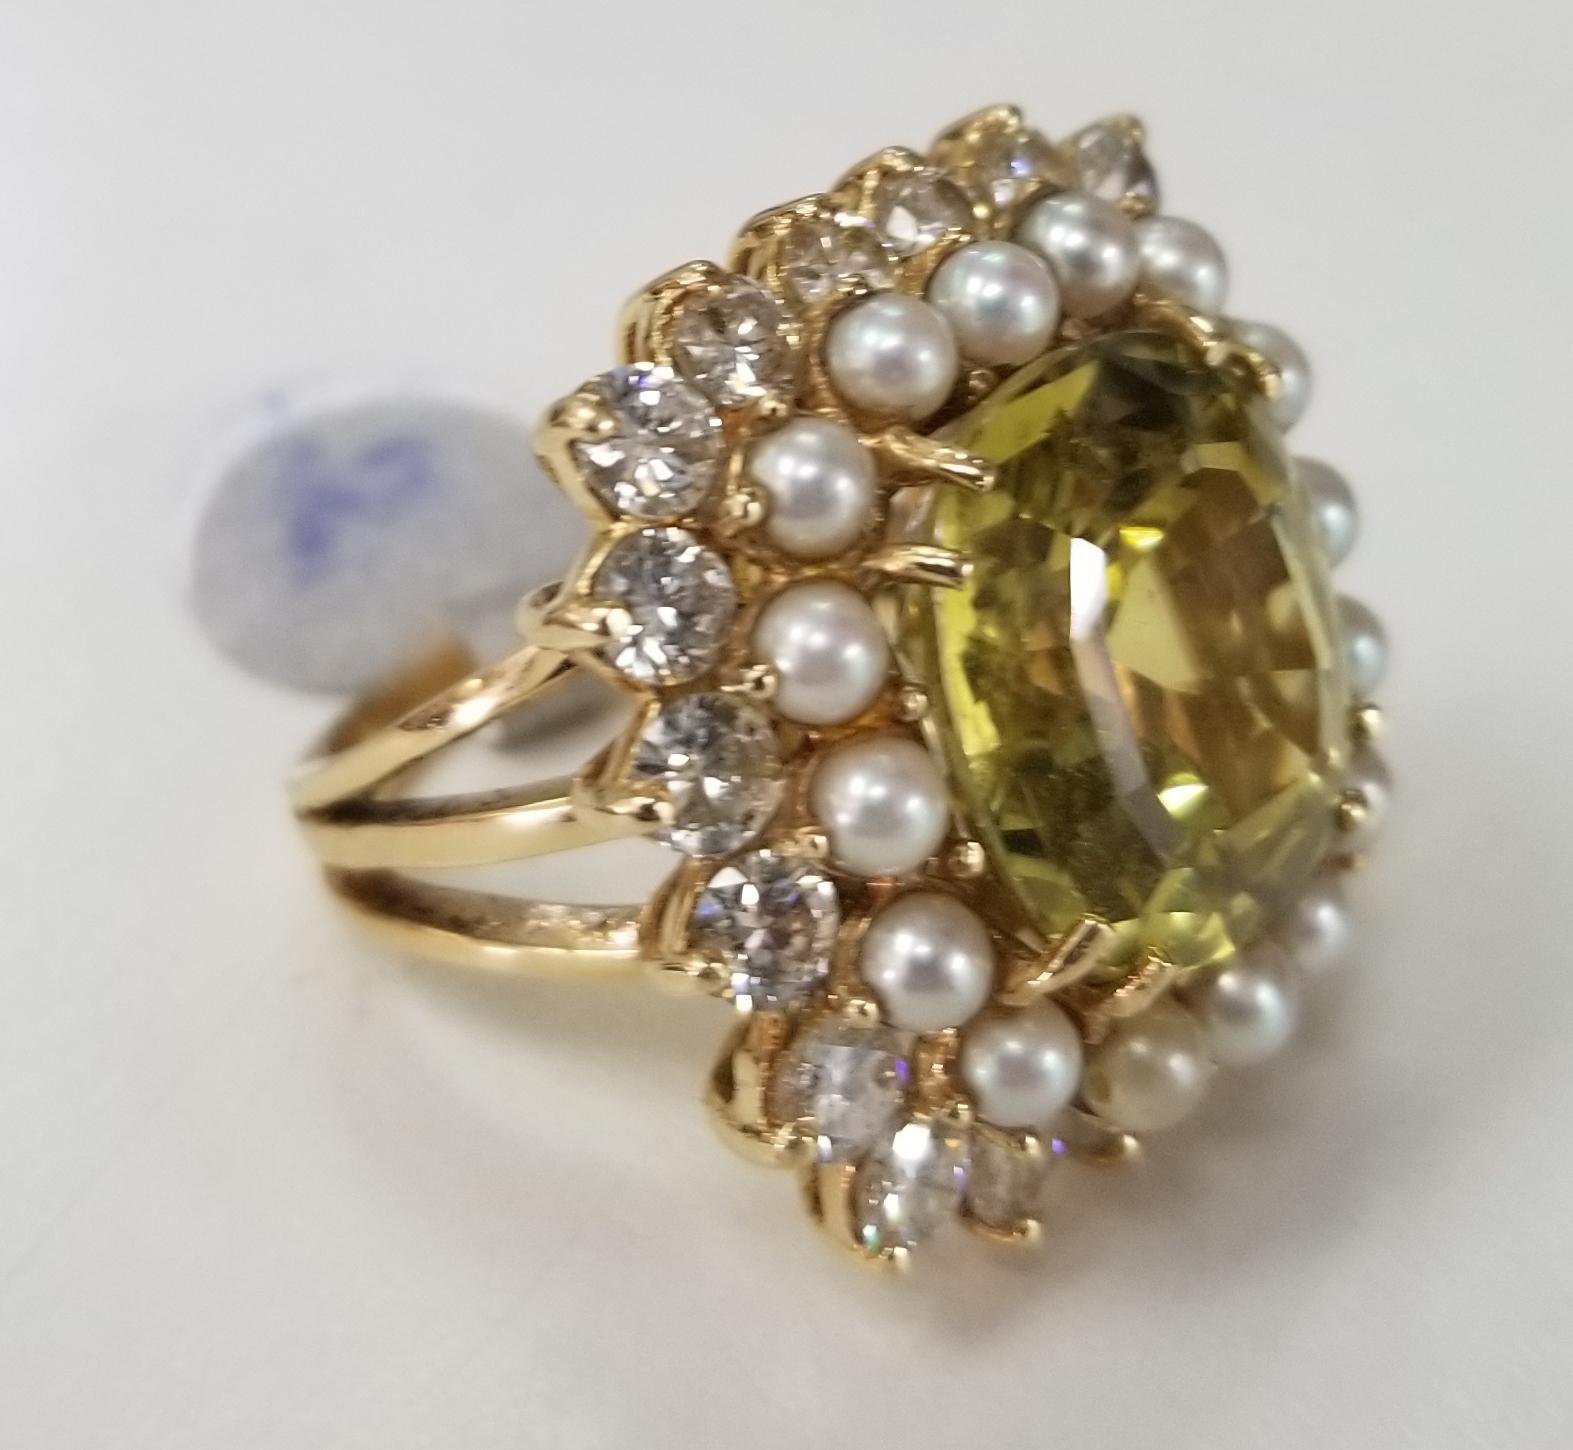 AGL Zertifiziert Natürlich  Ring mit Chrysoberyll-Perlen und Diamanten, enthält 1 Natural  Chrysoberyll (Abmessungen 13,97 x 13,20 x 7,86 mm)  umgeben von 16 3 mm großen Perlen und 20 runden Vollschliff-Diamanten von sehr guter Qualität mit einem